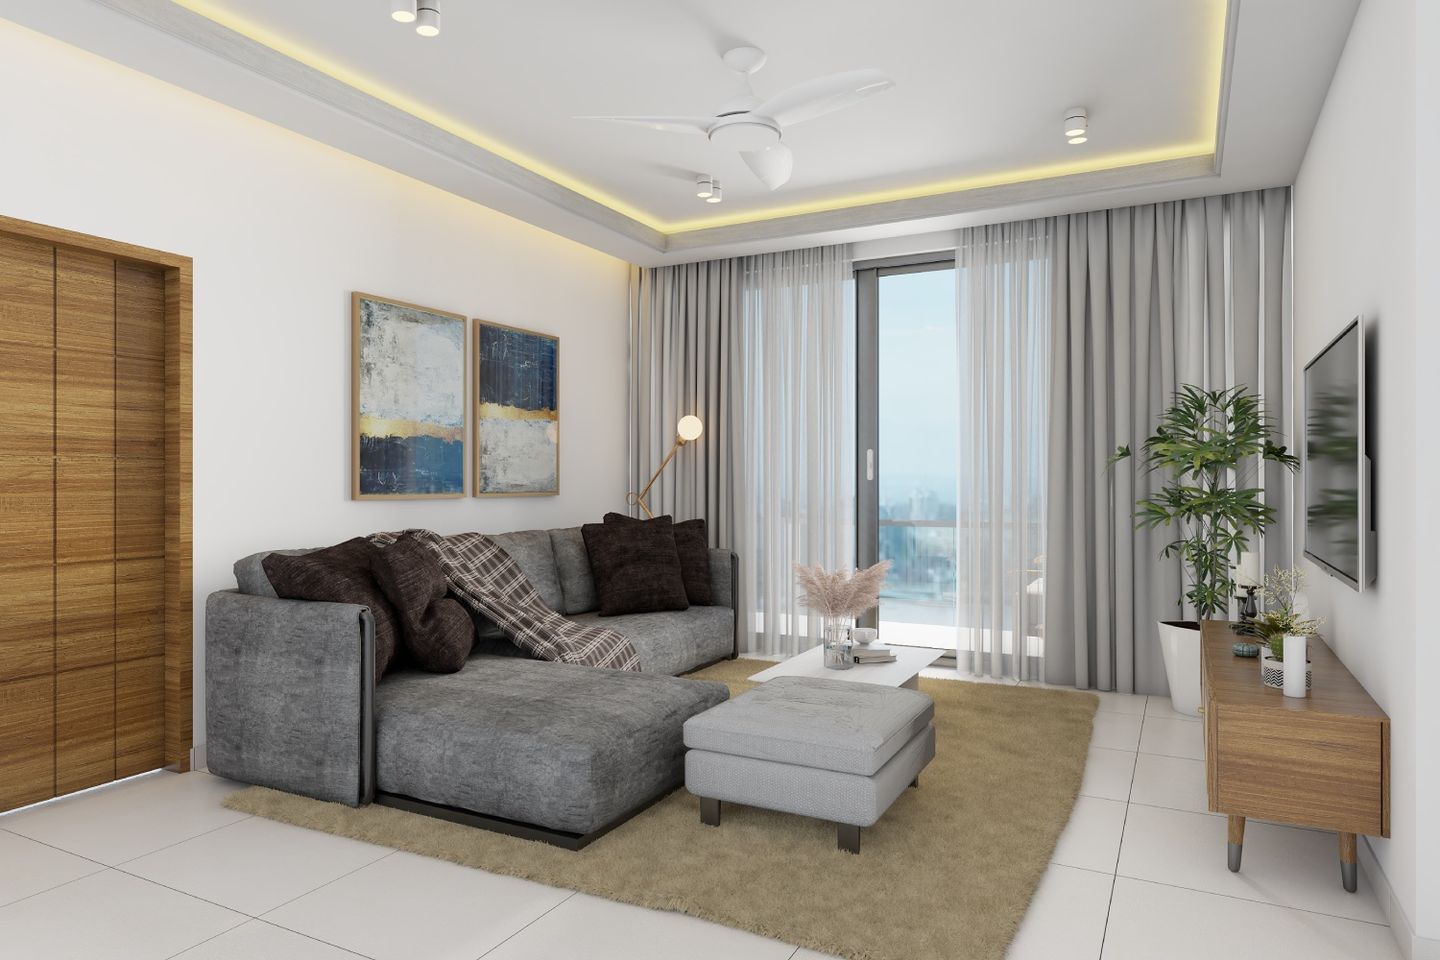 Living Room False Ceiling With Cylinder Lights - Livspace